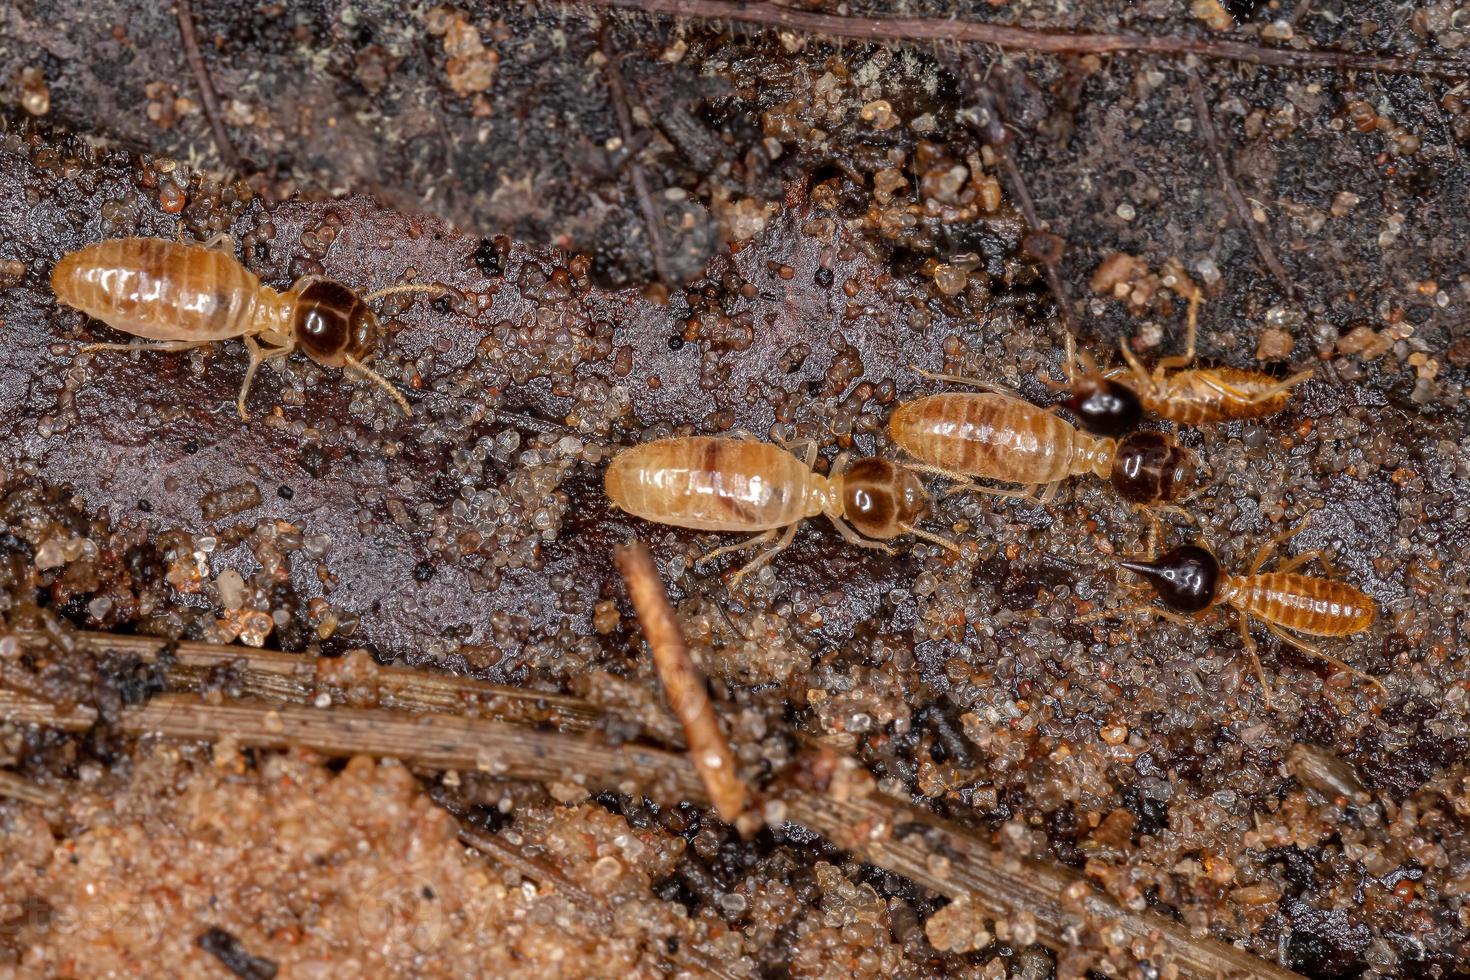 erwachsene nasute termiten foto